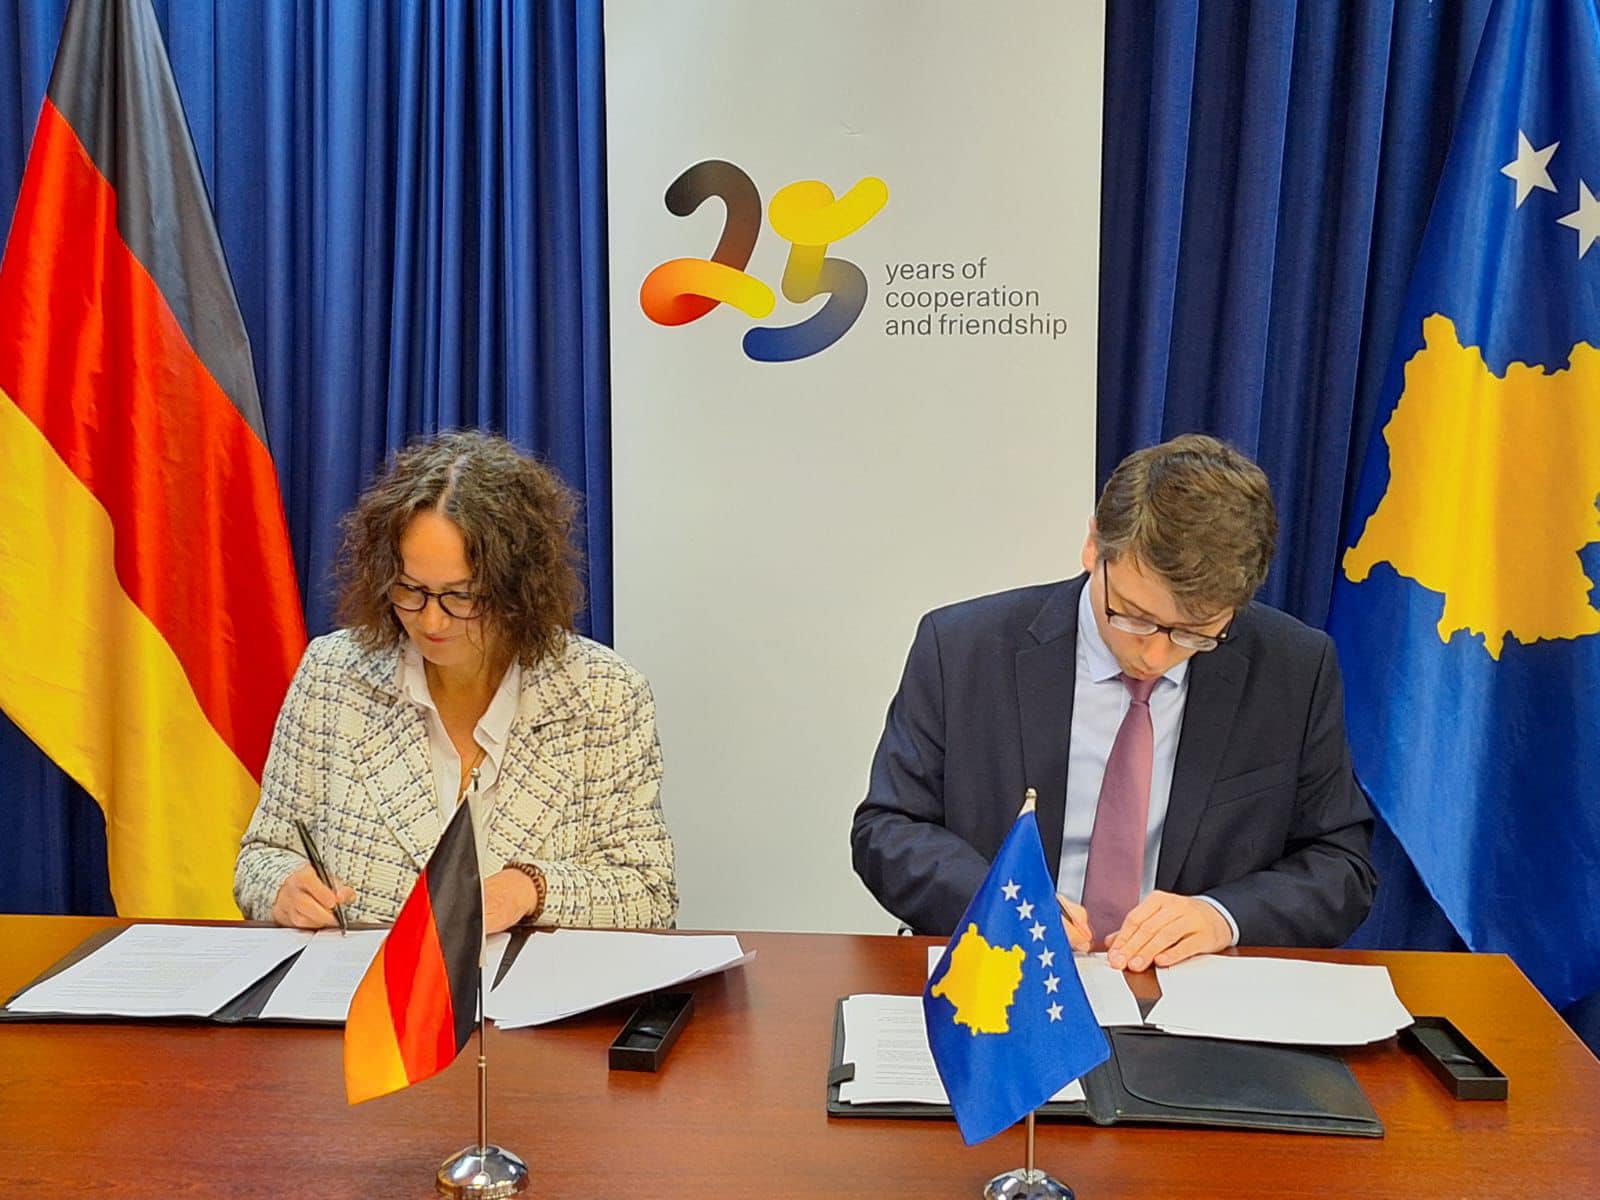 Marrëveshja për bashkëpunim me Gjermaninë, 90 milionë euro mbështetje për punësim, energji dhe integrim të Kosovës në BE